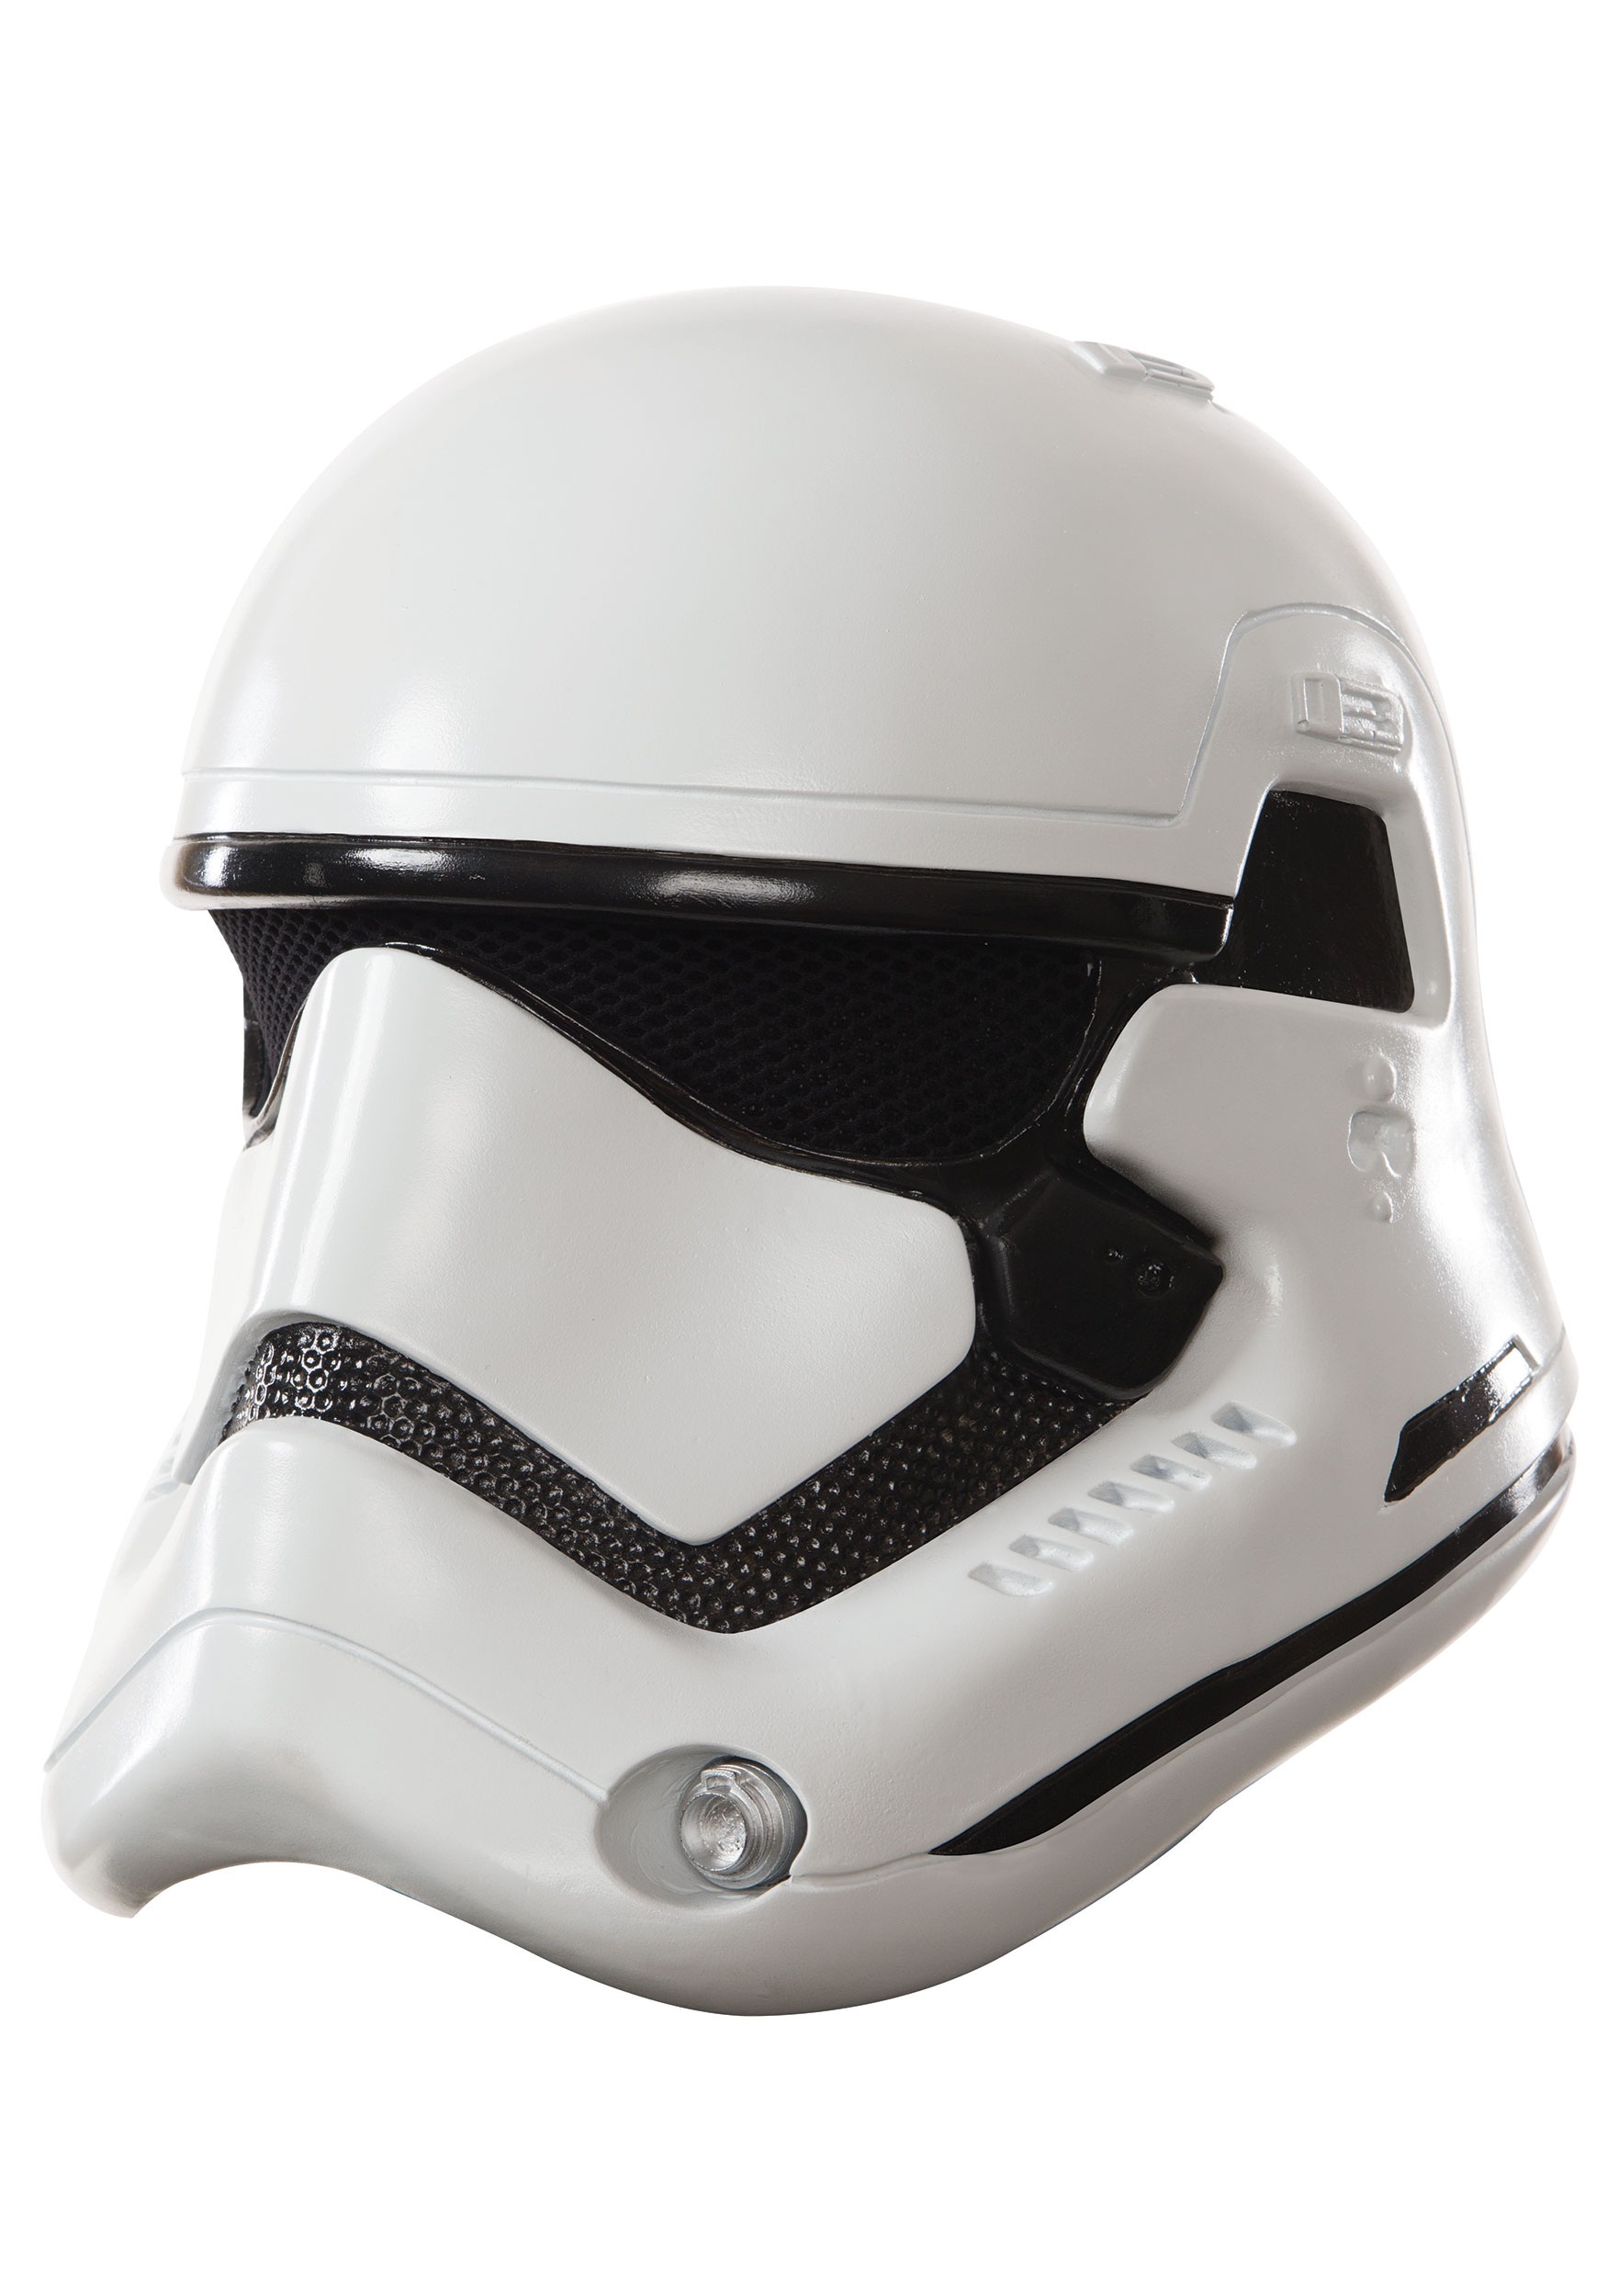 Adult Deluxe Stormtrooper Helmet from Star Wars Episode 7